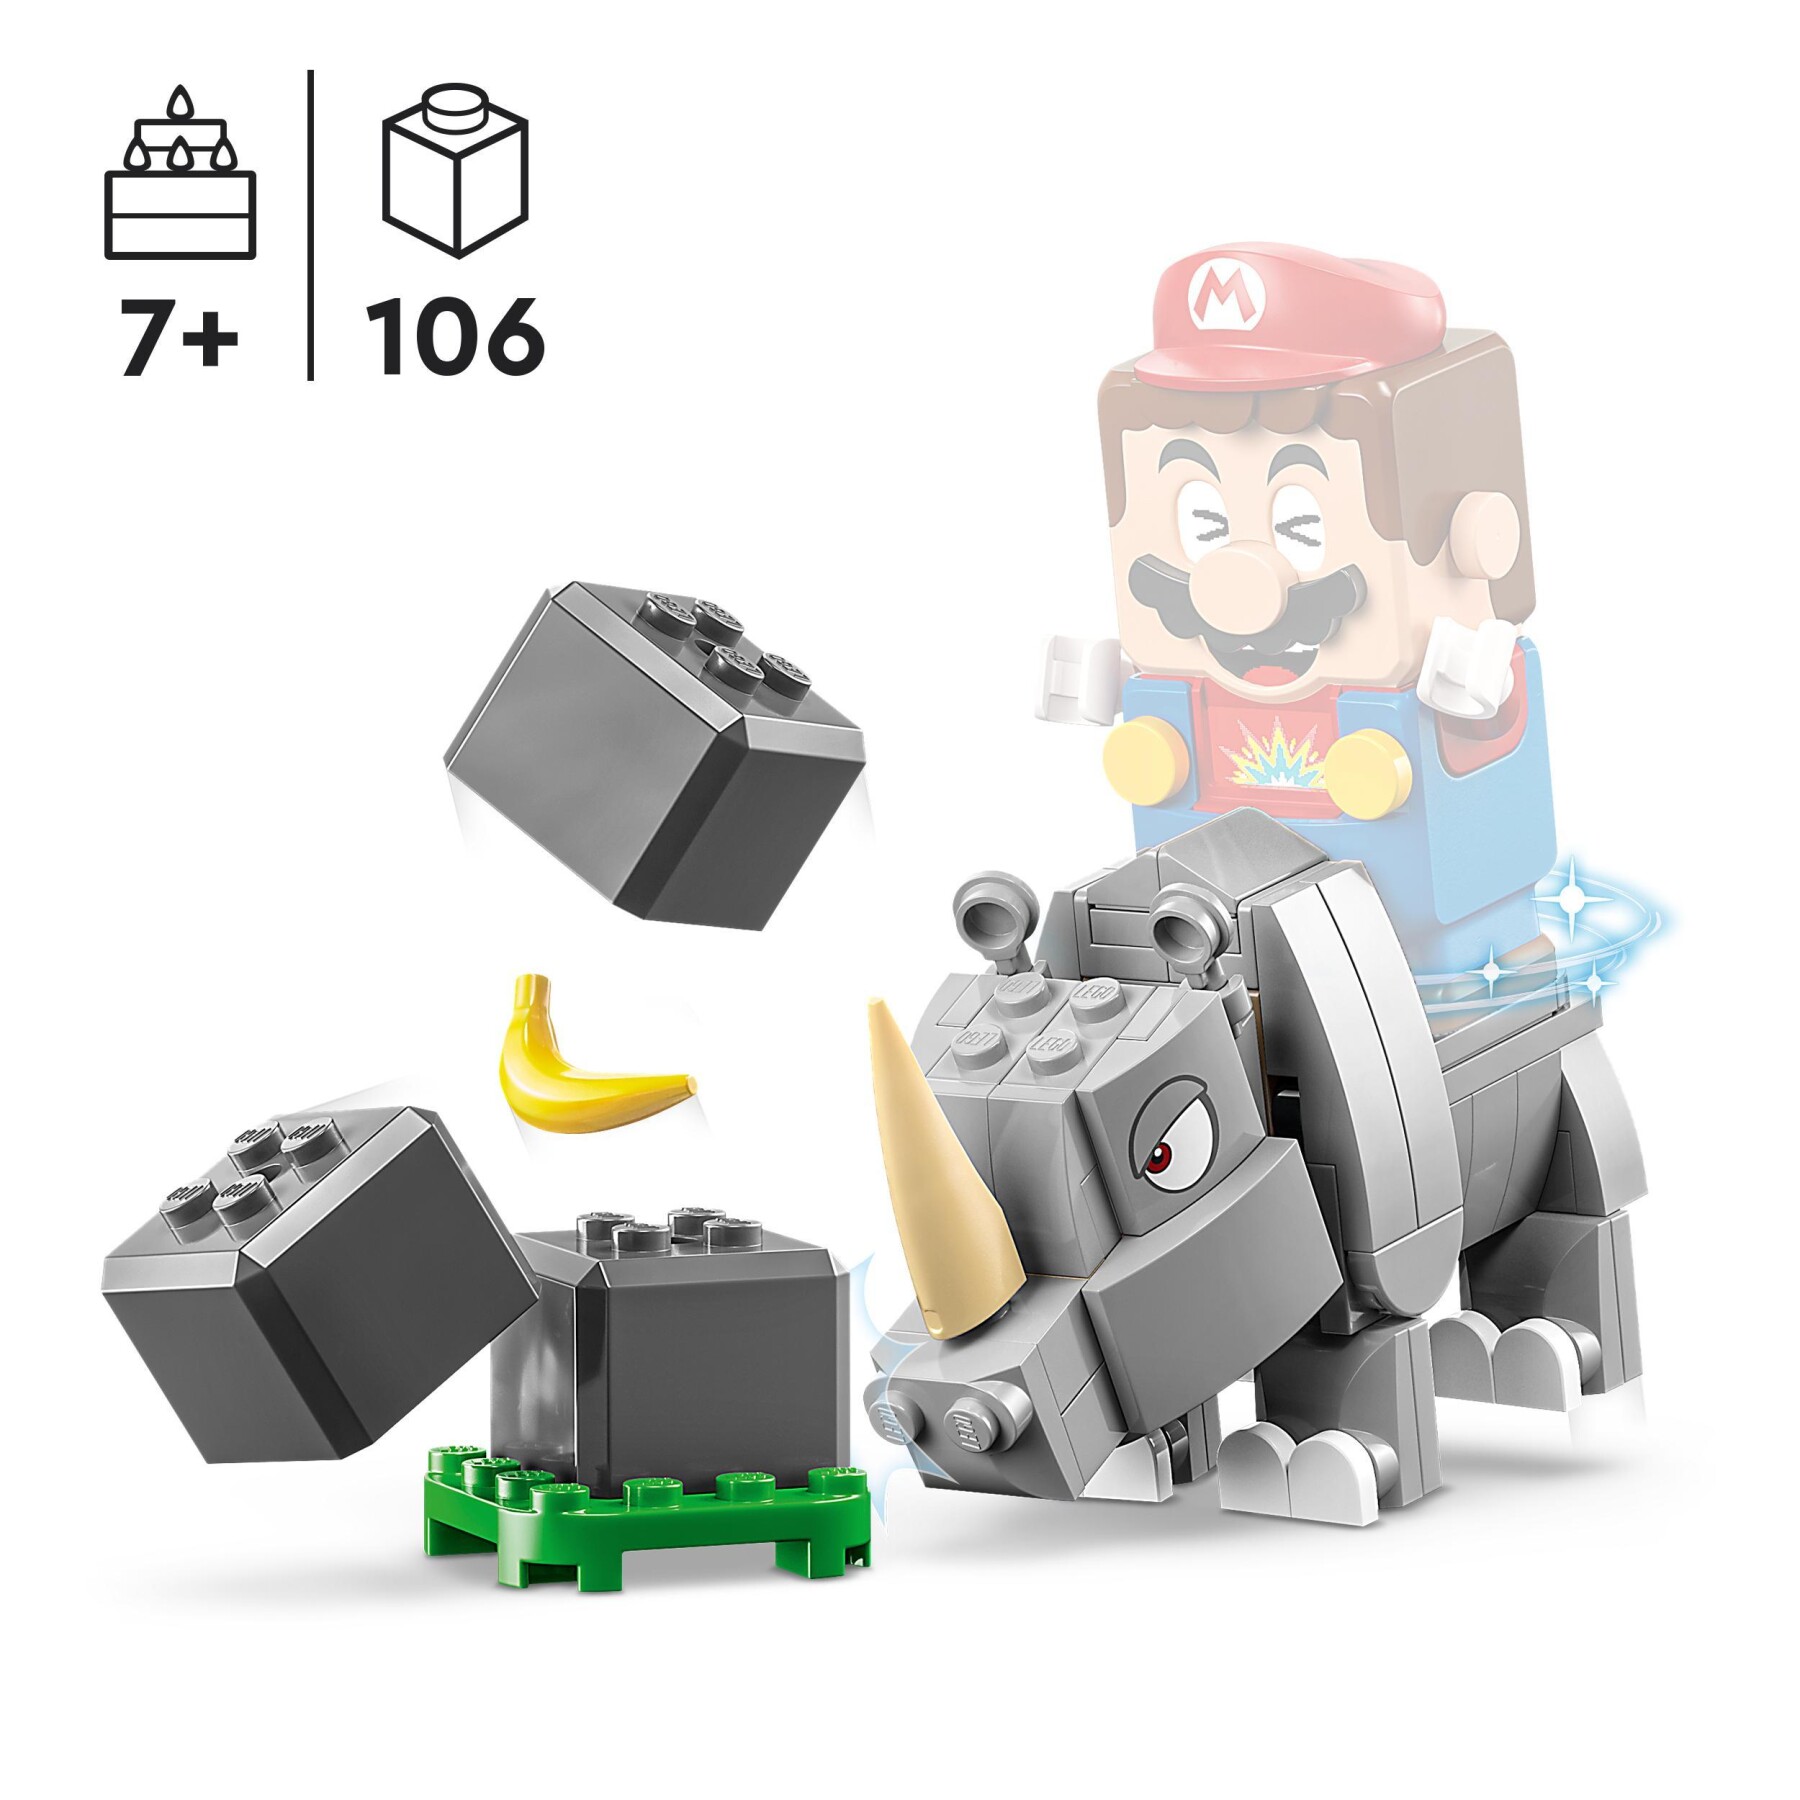 Lego super mario 71420 pack di espansione rambi il rinoceronte, figura animale giocattolo da abbinare a uno starter pack - LEGO® Super Mario™, Super Mario